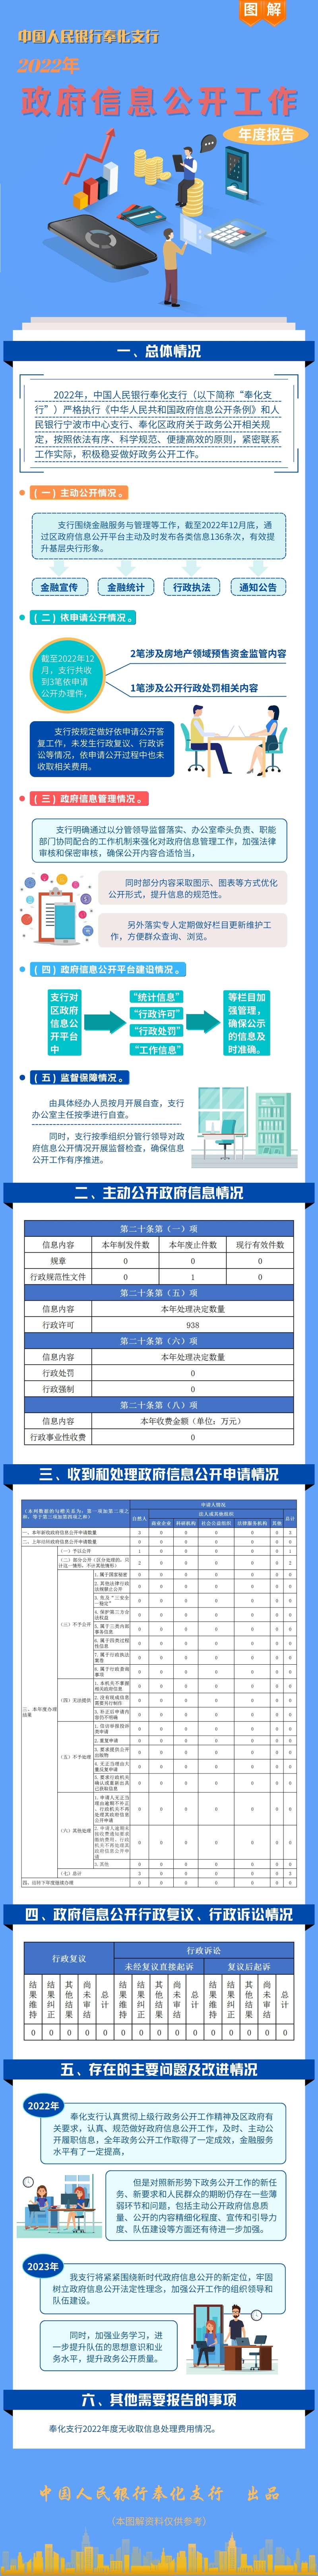 中国人民银行奉化支行2022年政府信息公开工作年度报告.jpg